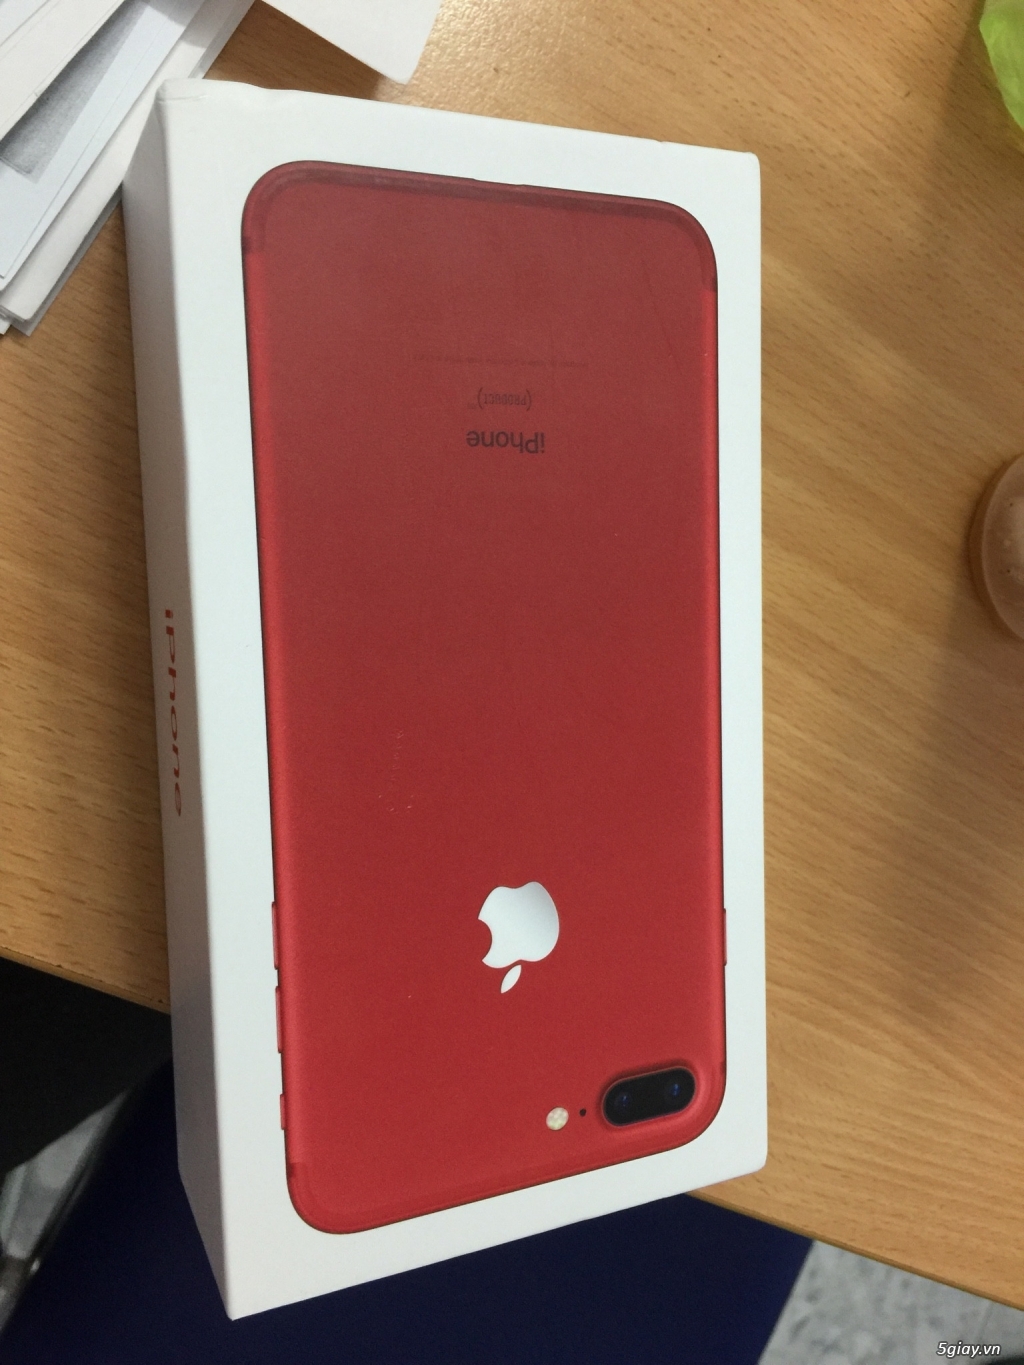 iPhone 7 Plus(RED) 256GB full box Hnam mobile. Chưa tháo seal, sim!